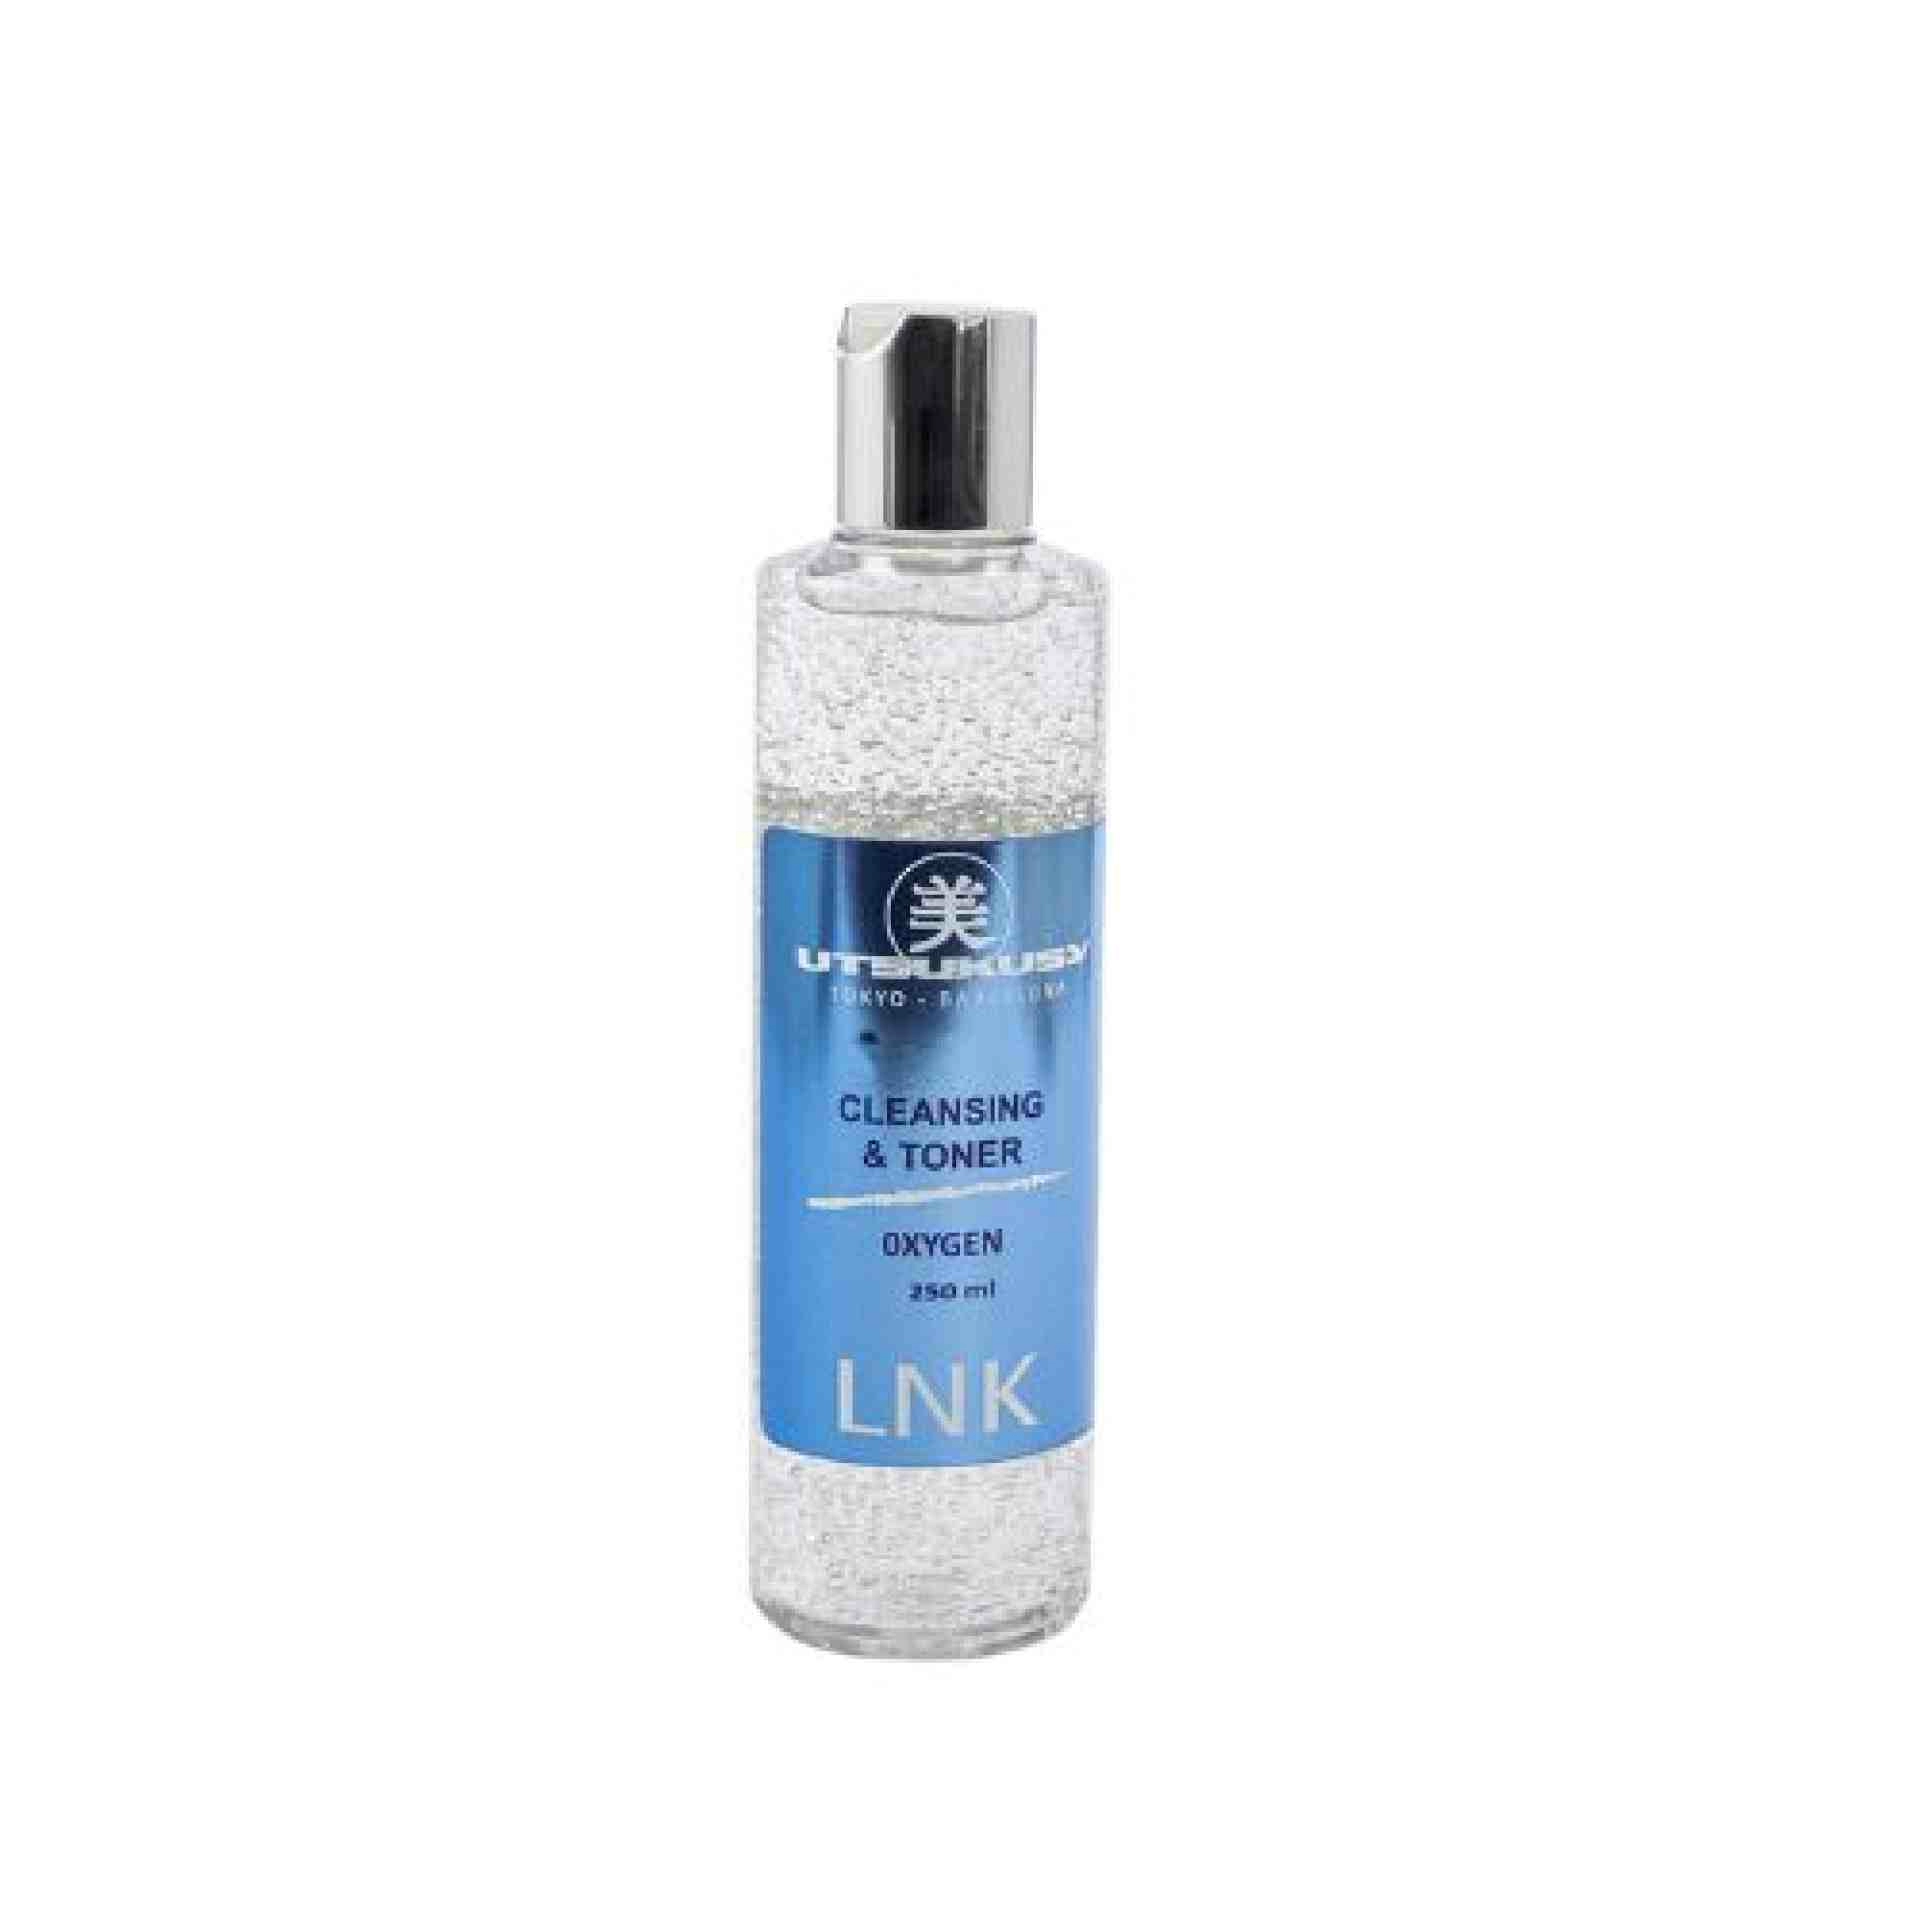 LNK limpiador oxígeno | Gel Limpiador 250ml - Basic Line - Utsukusy ®